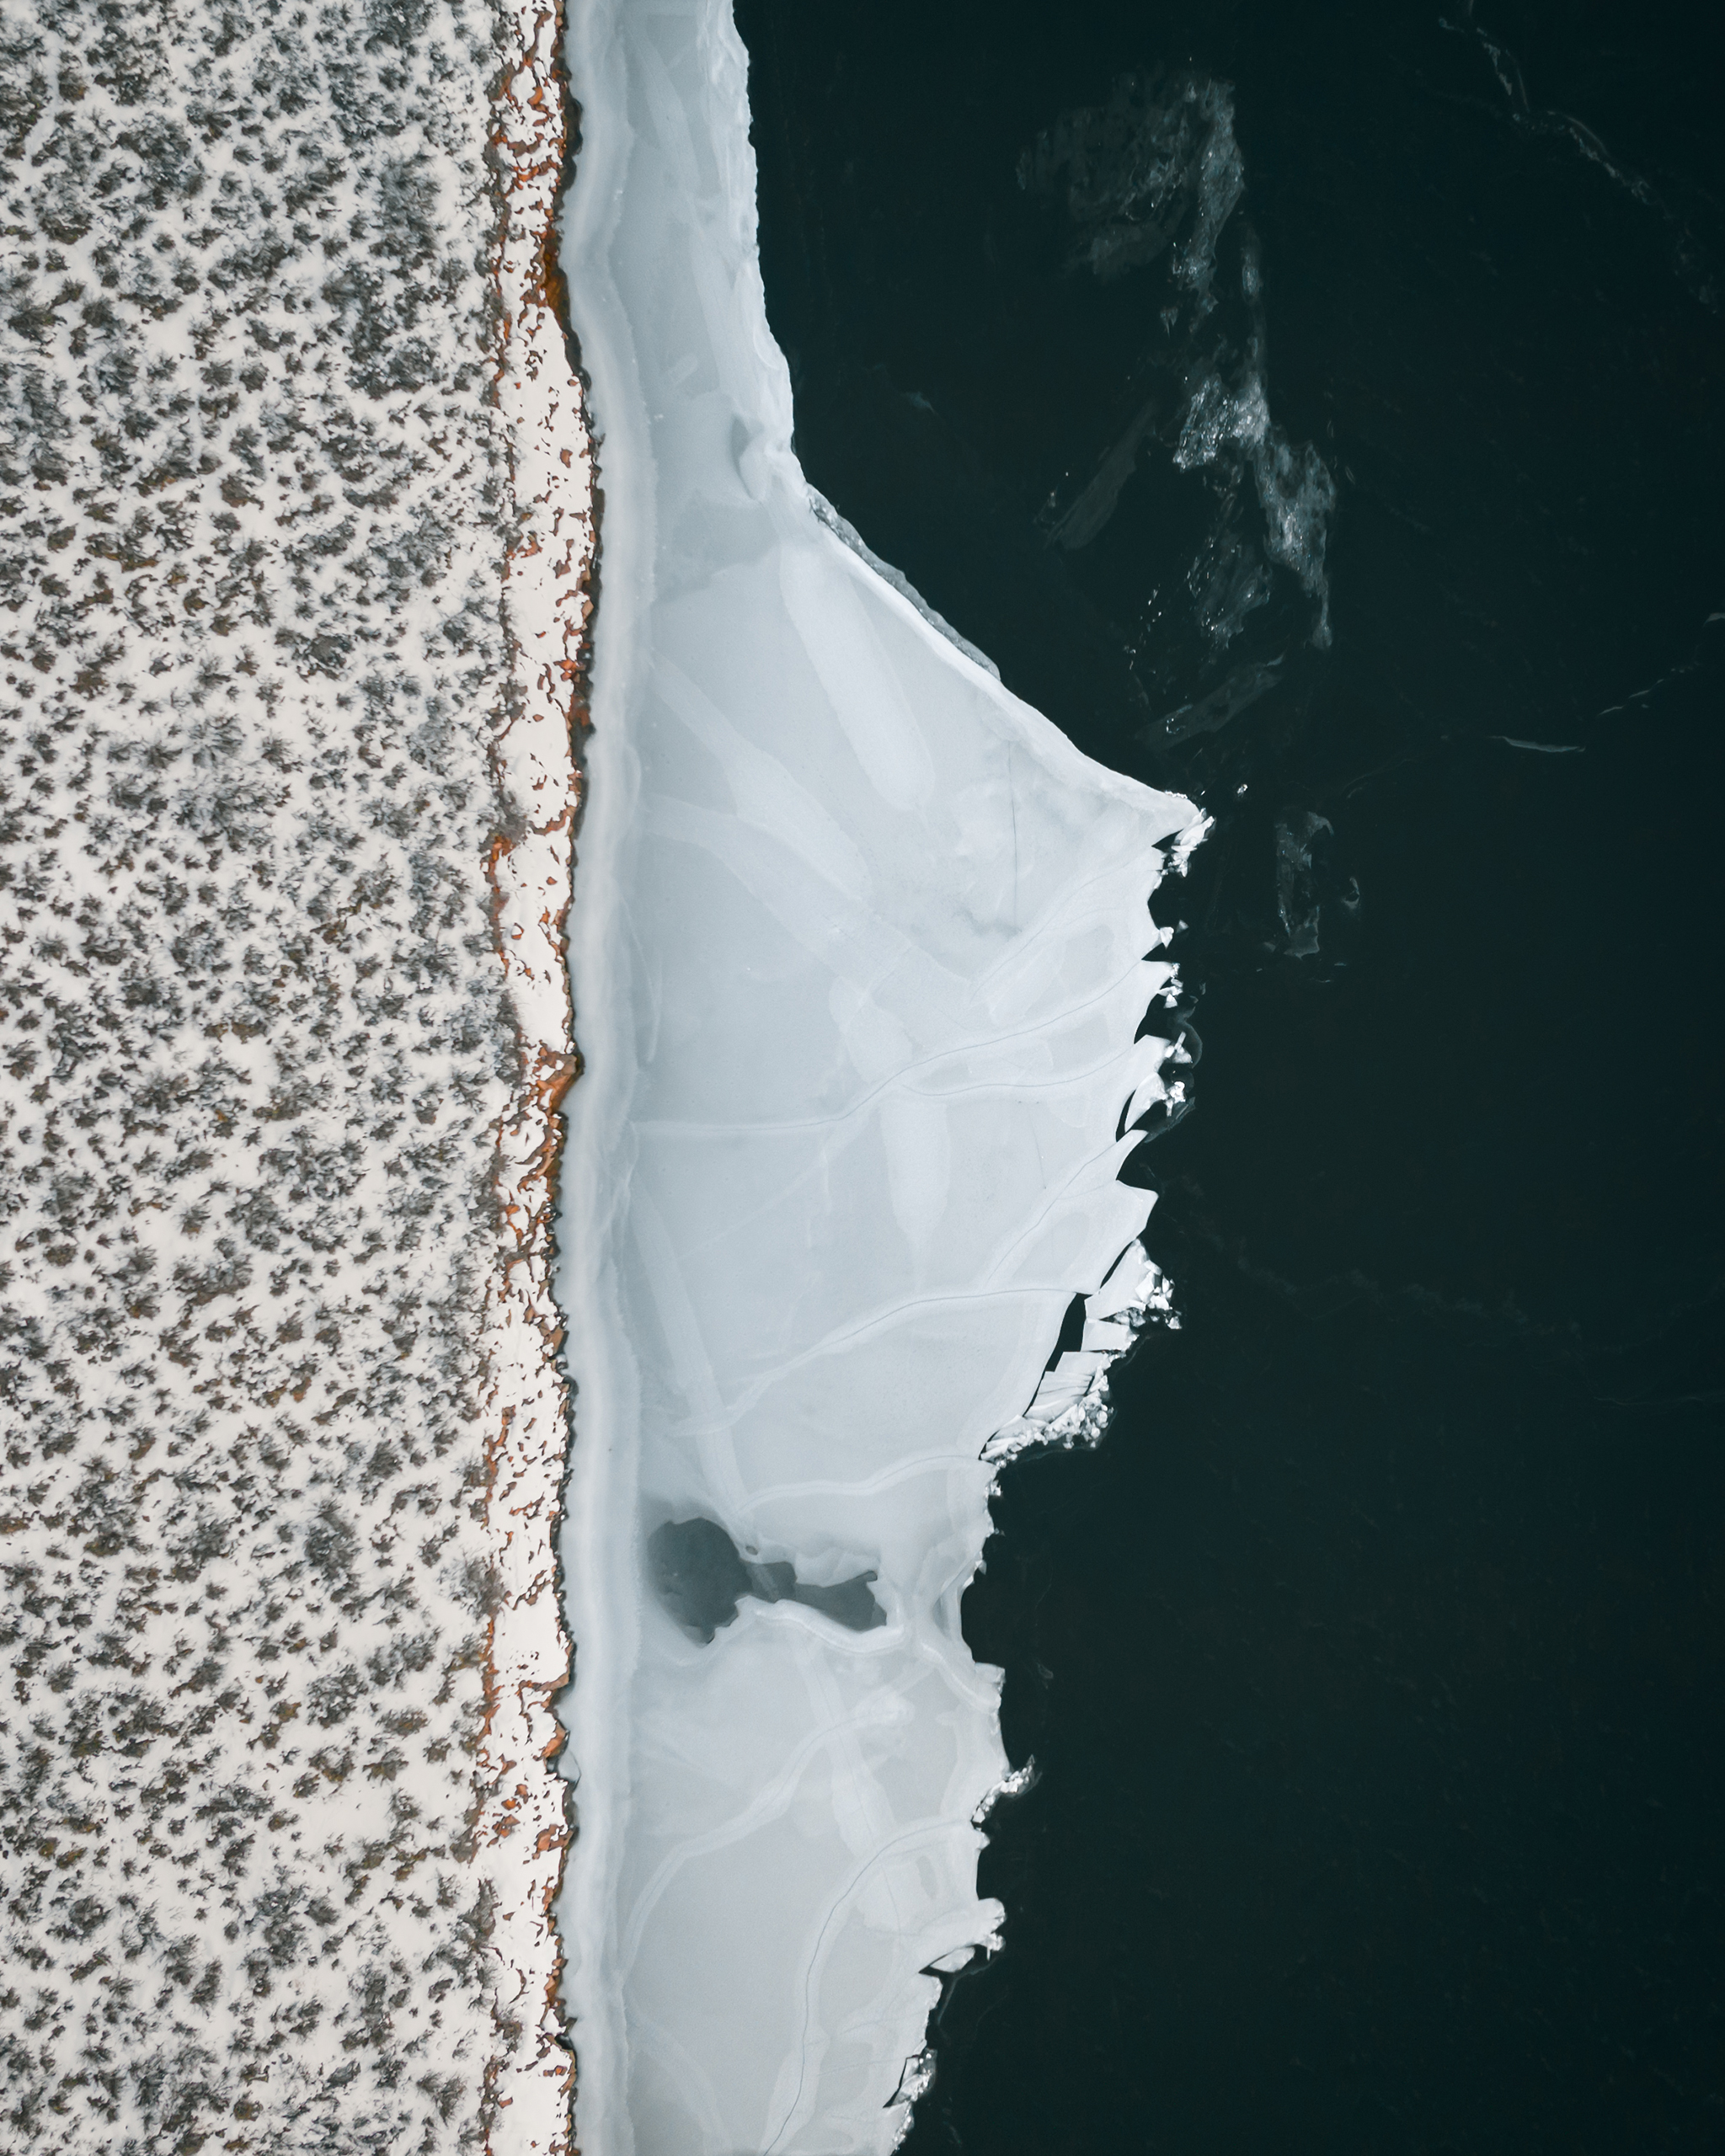 horsetooth reservoir frozen in winter aerial view | Matt Grandbois